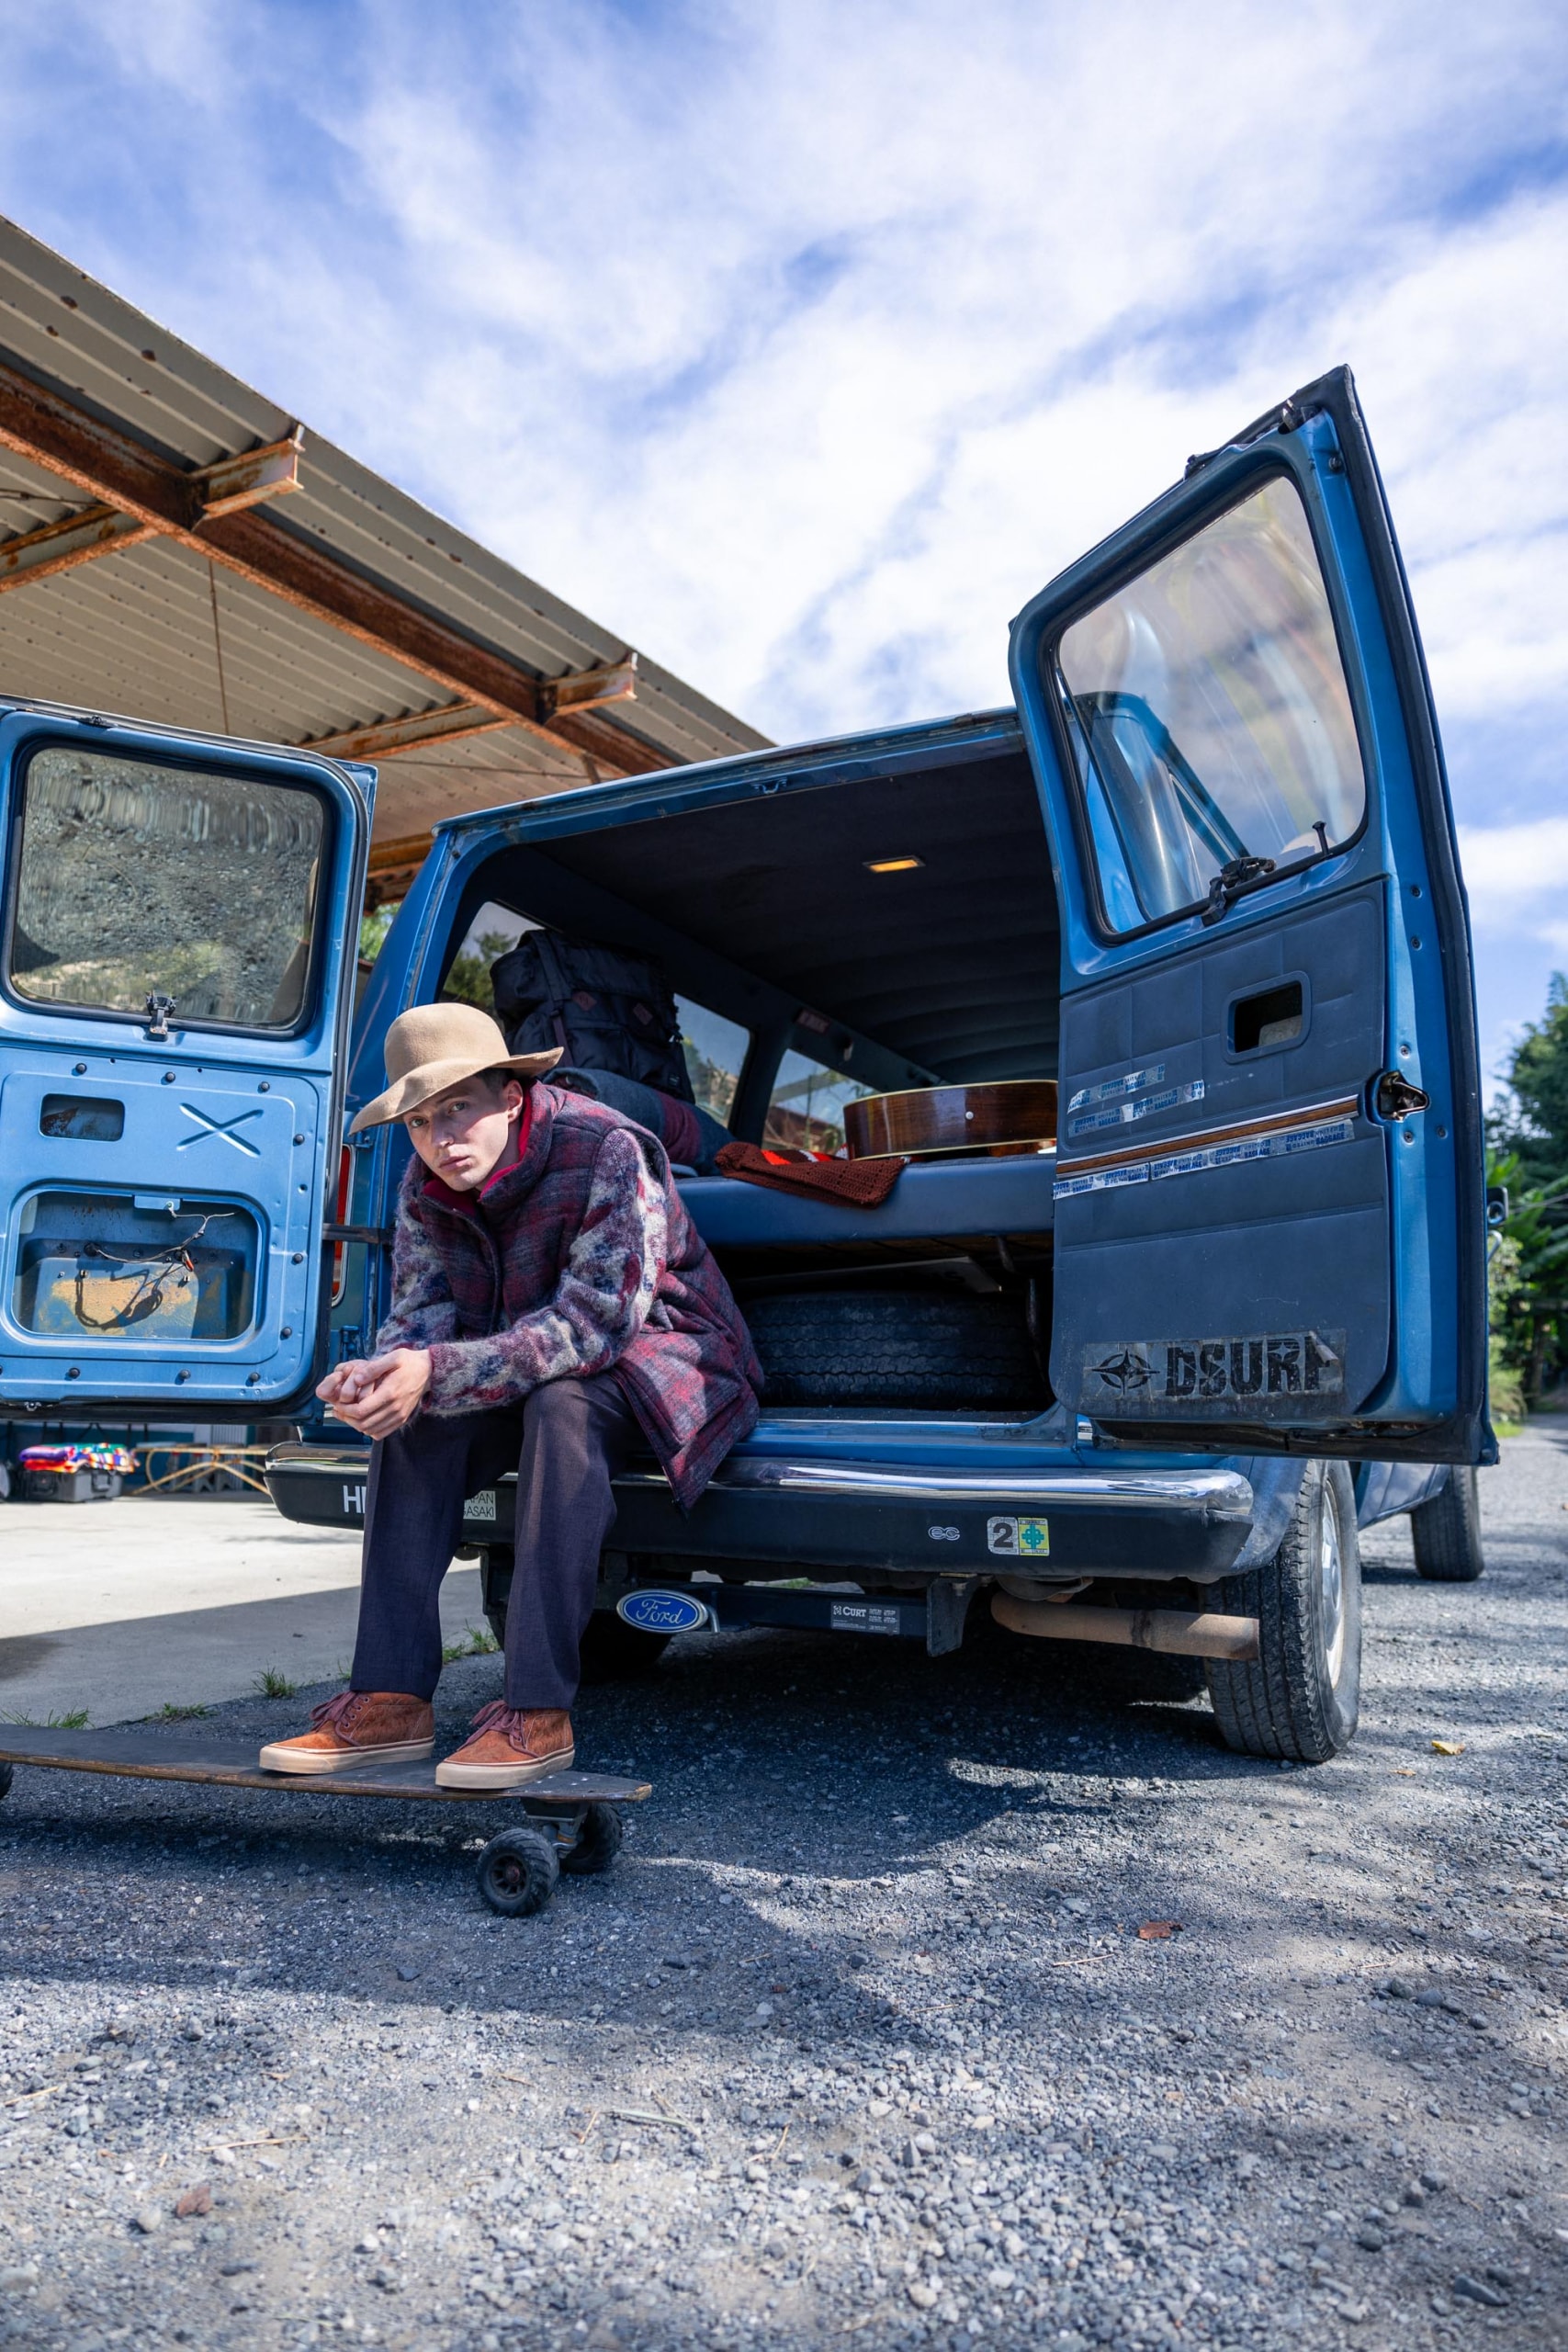 Vans 携手 White Mountaineering 推出全新冬季联名鞋款